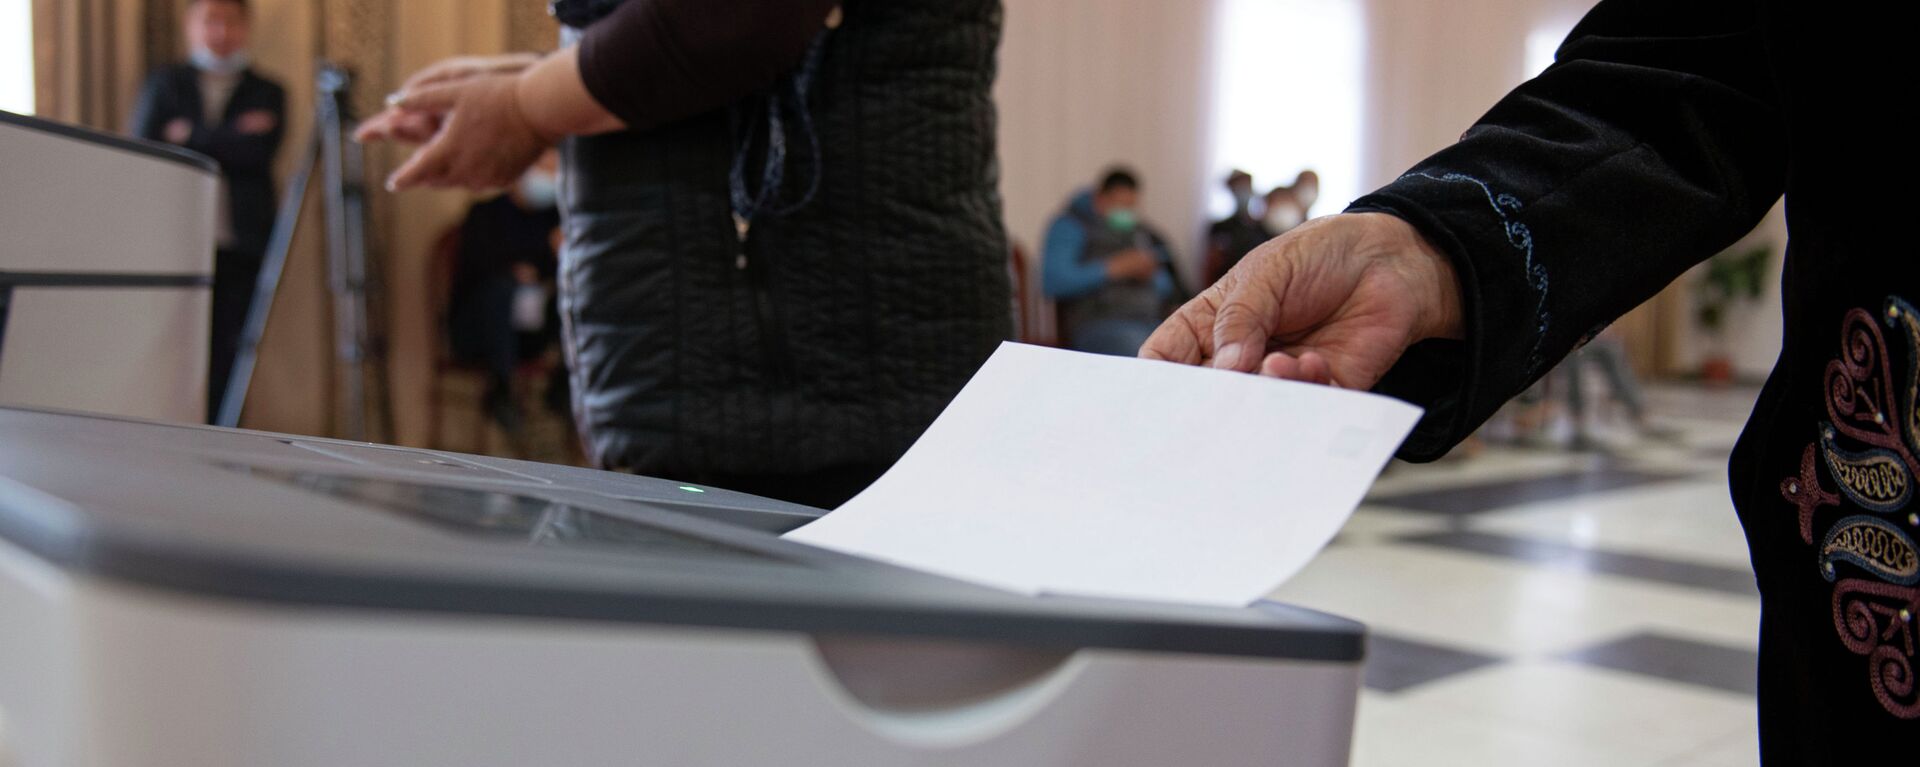 Люди голосуют на избирательном участке - Sputnik Кыргызстан, 1920, 16.04.2021